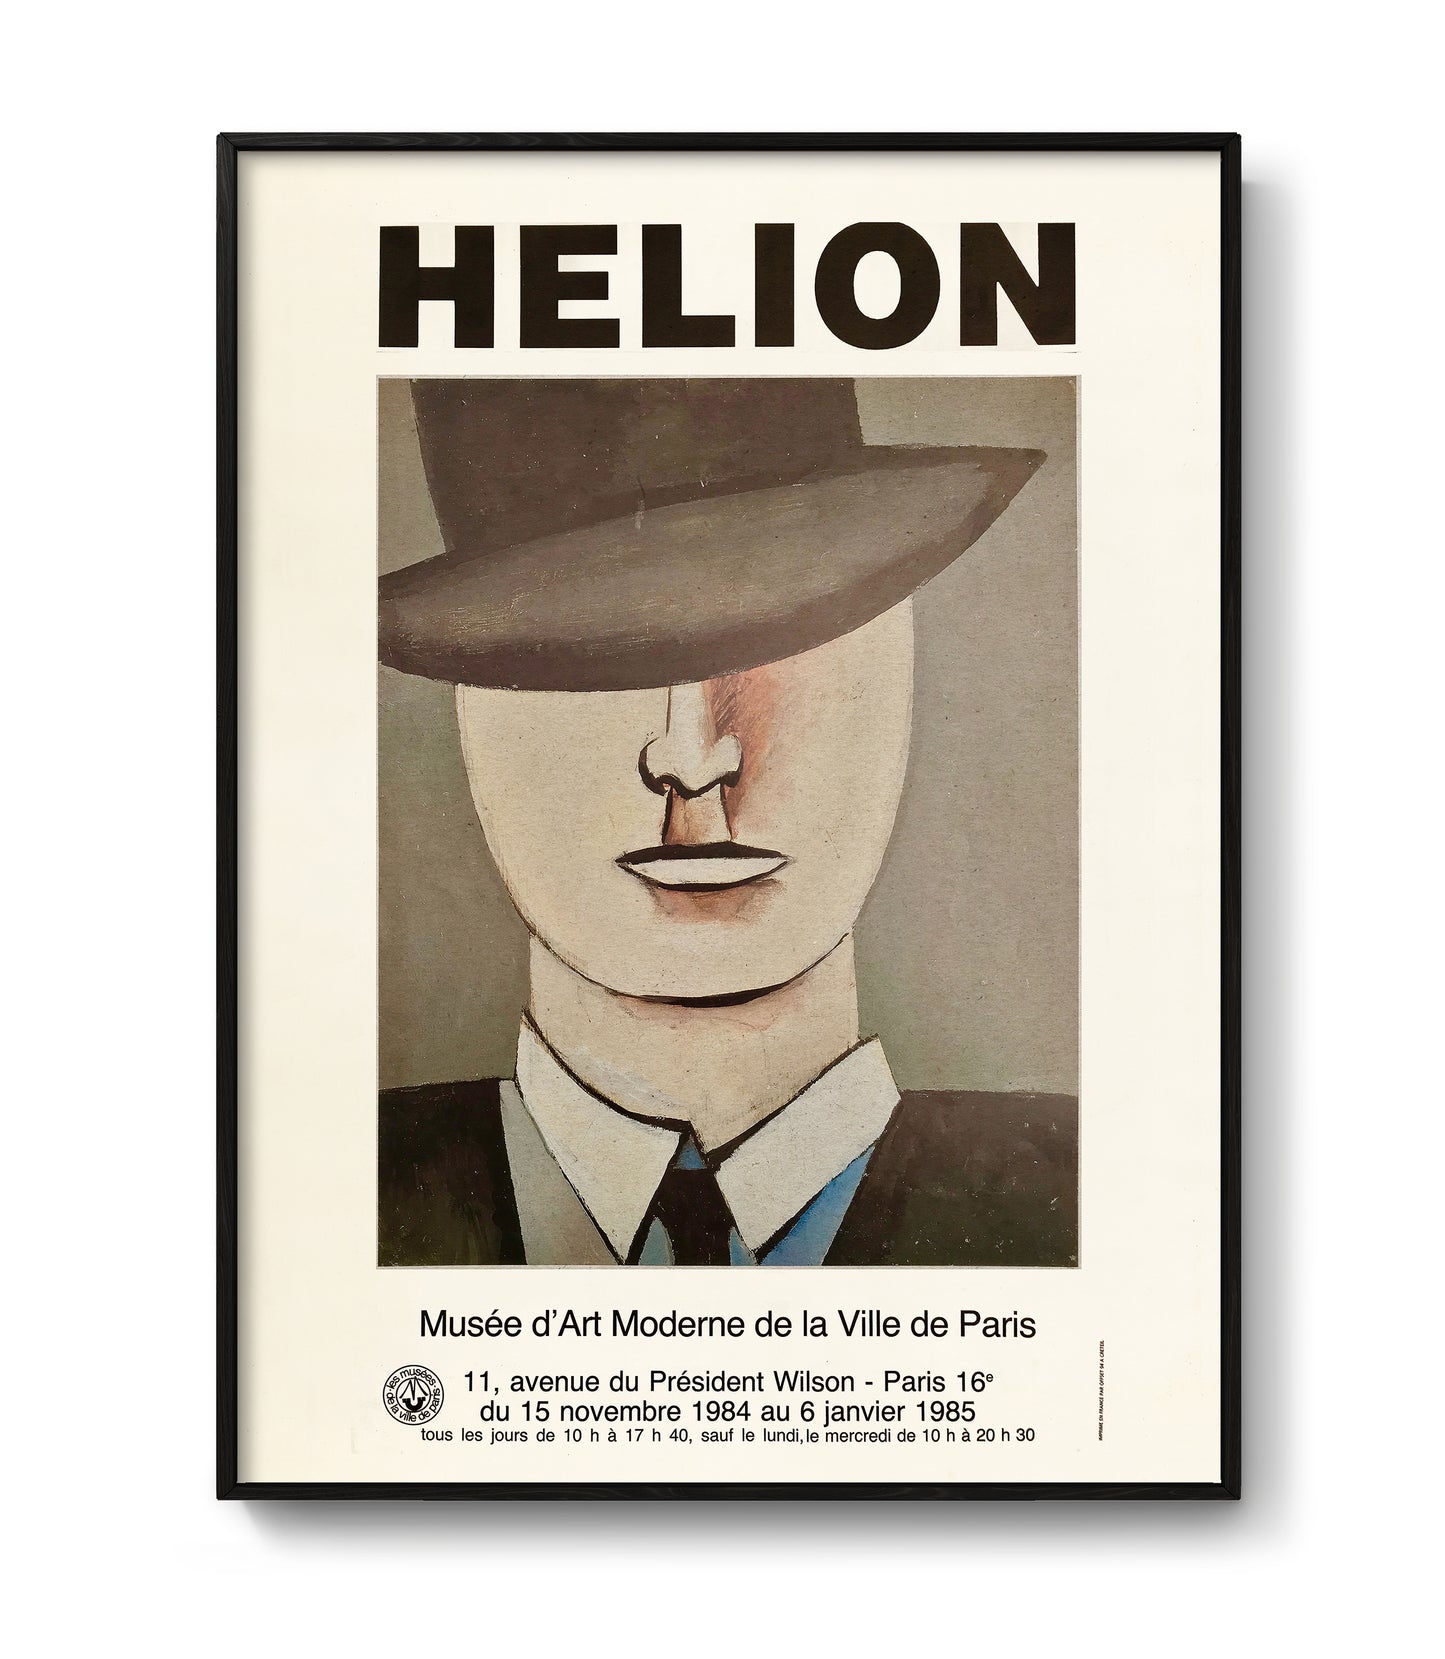 Jean Hélion exhibition poster